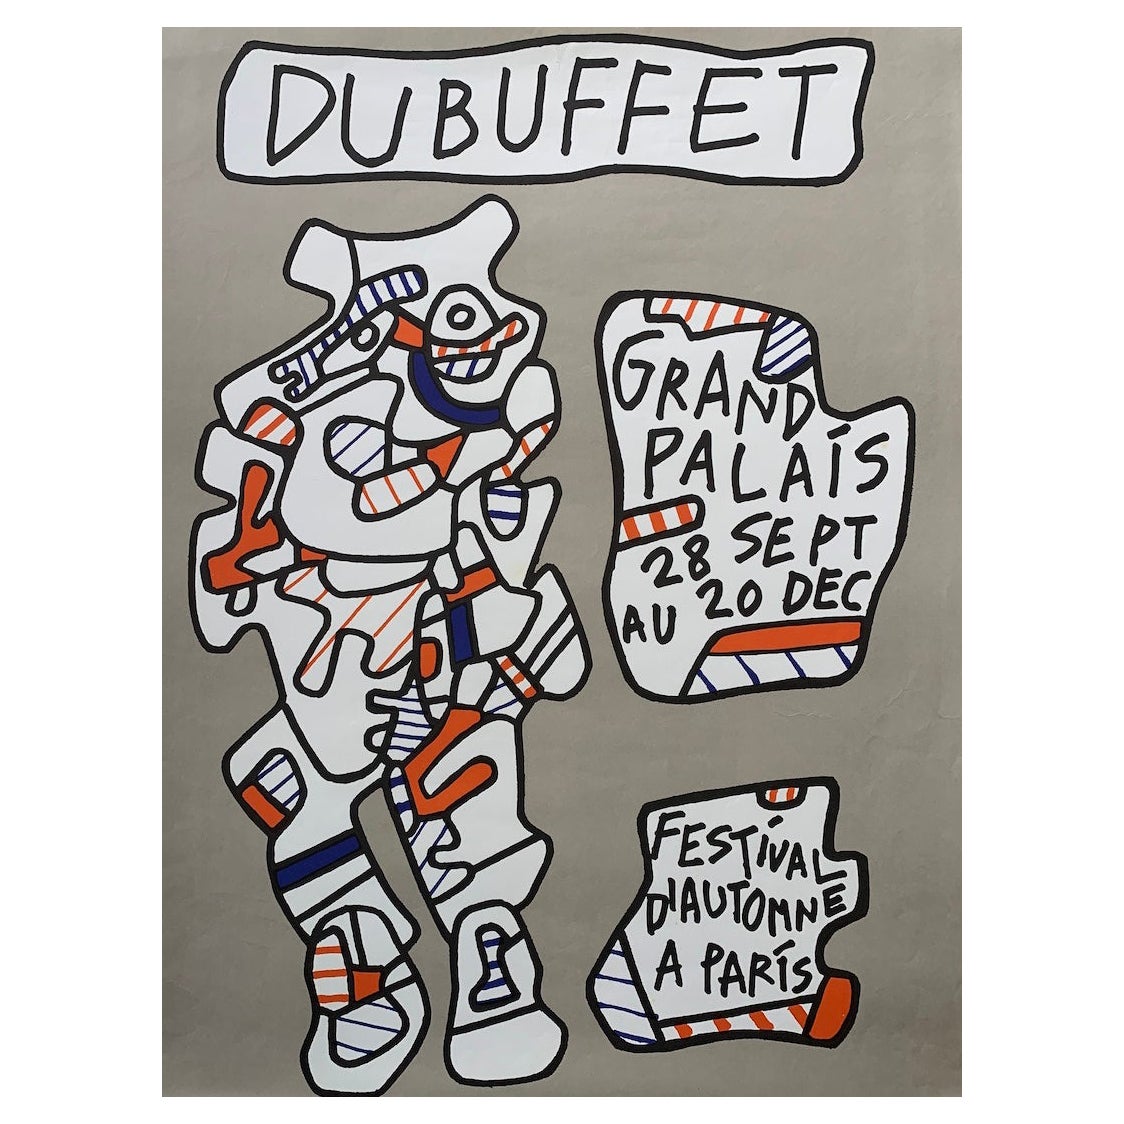 Jean Dubuffet, 'Festival D’automne a Paris' Original Vintage Exhibition Poster